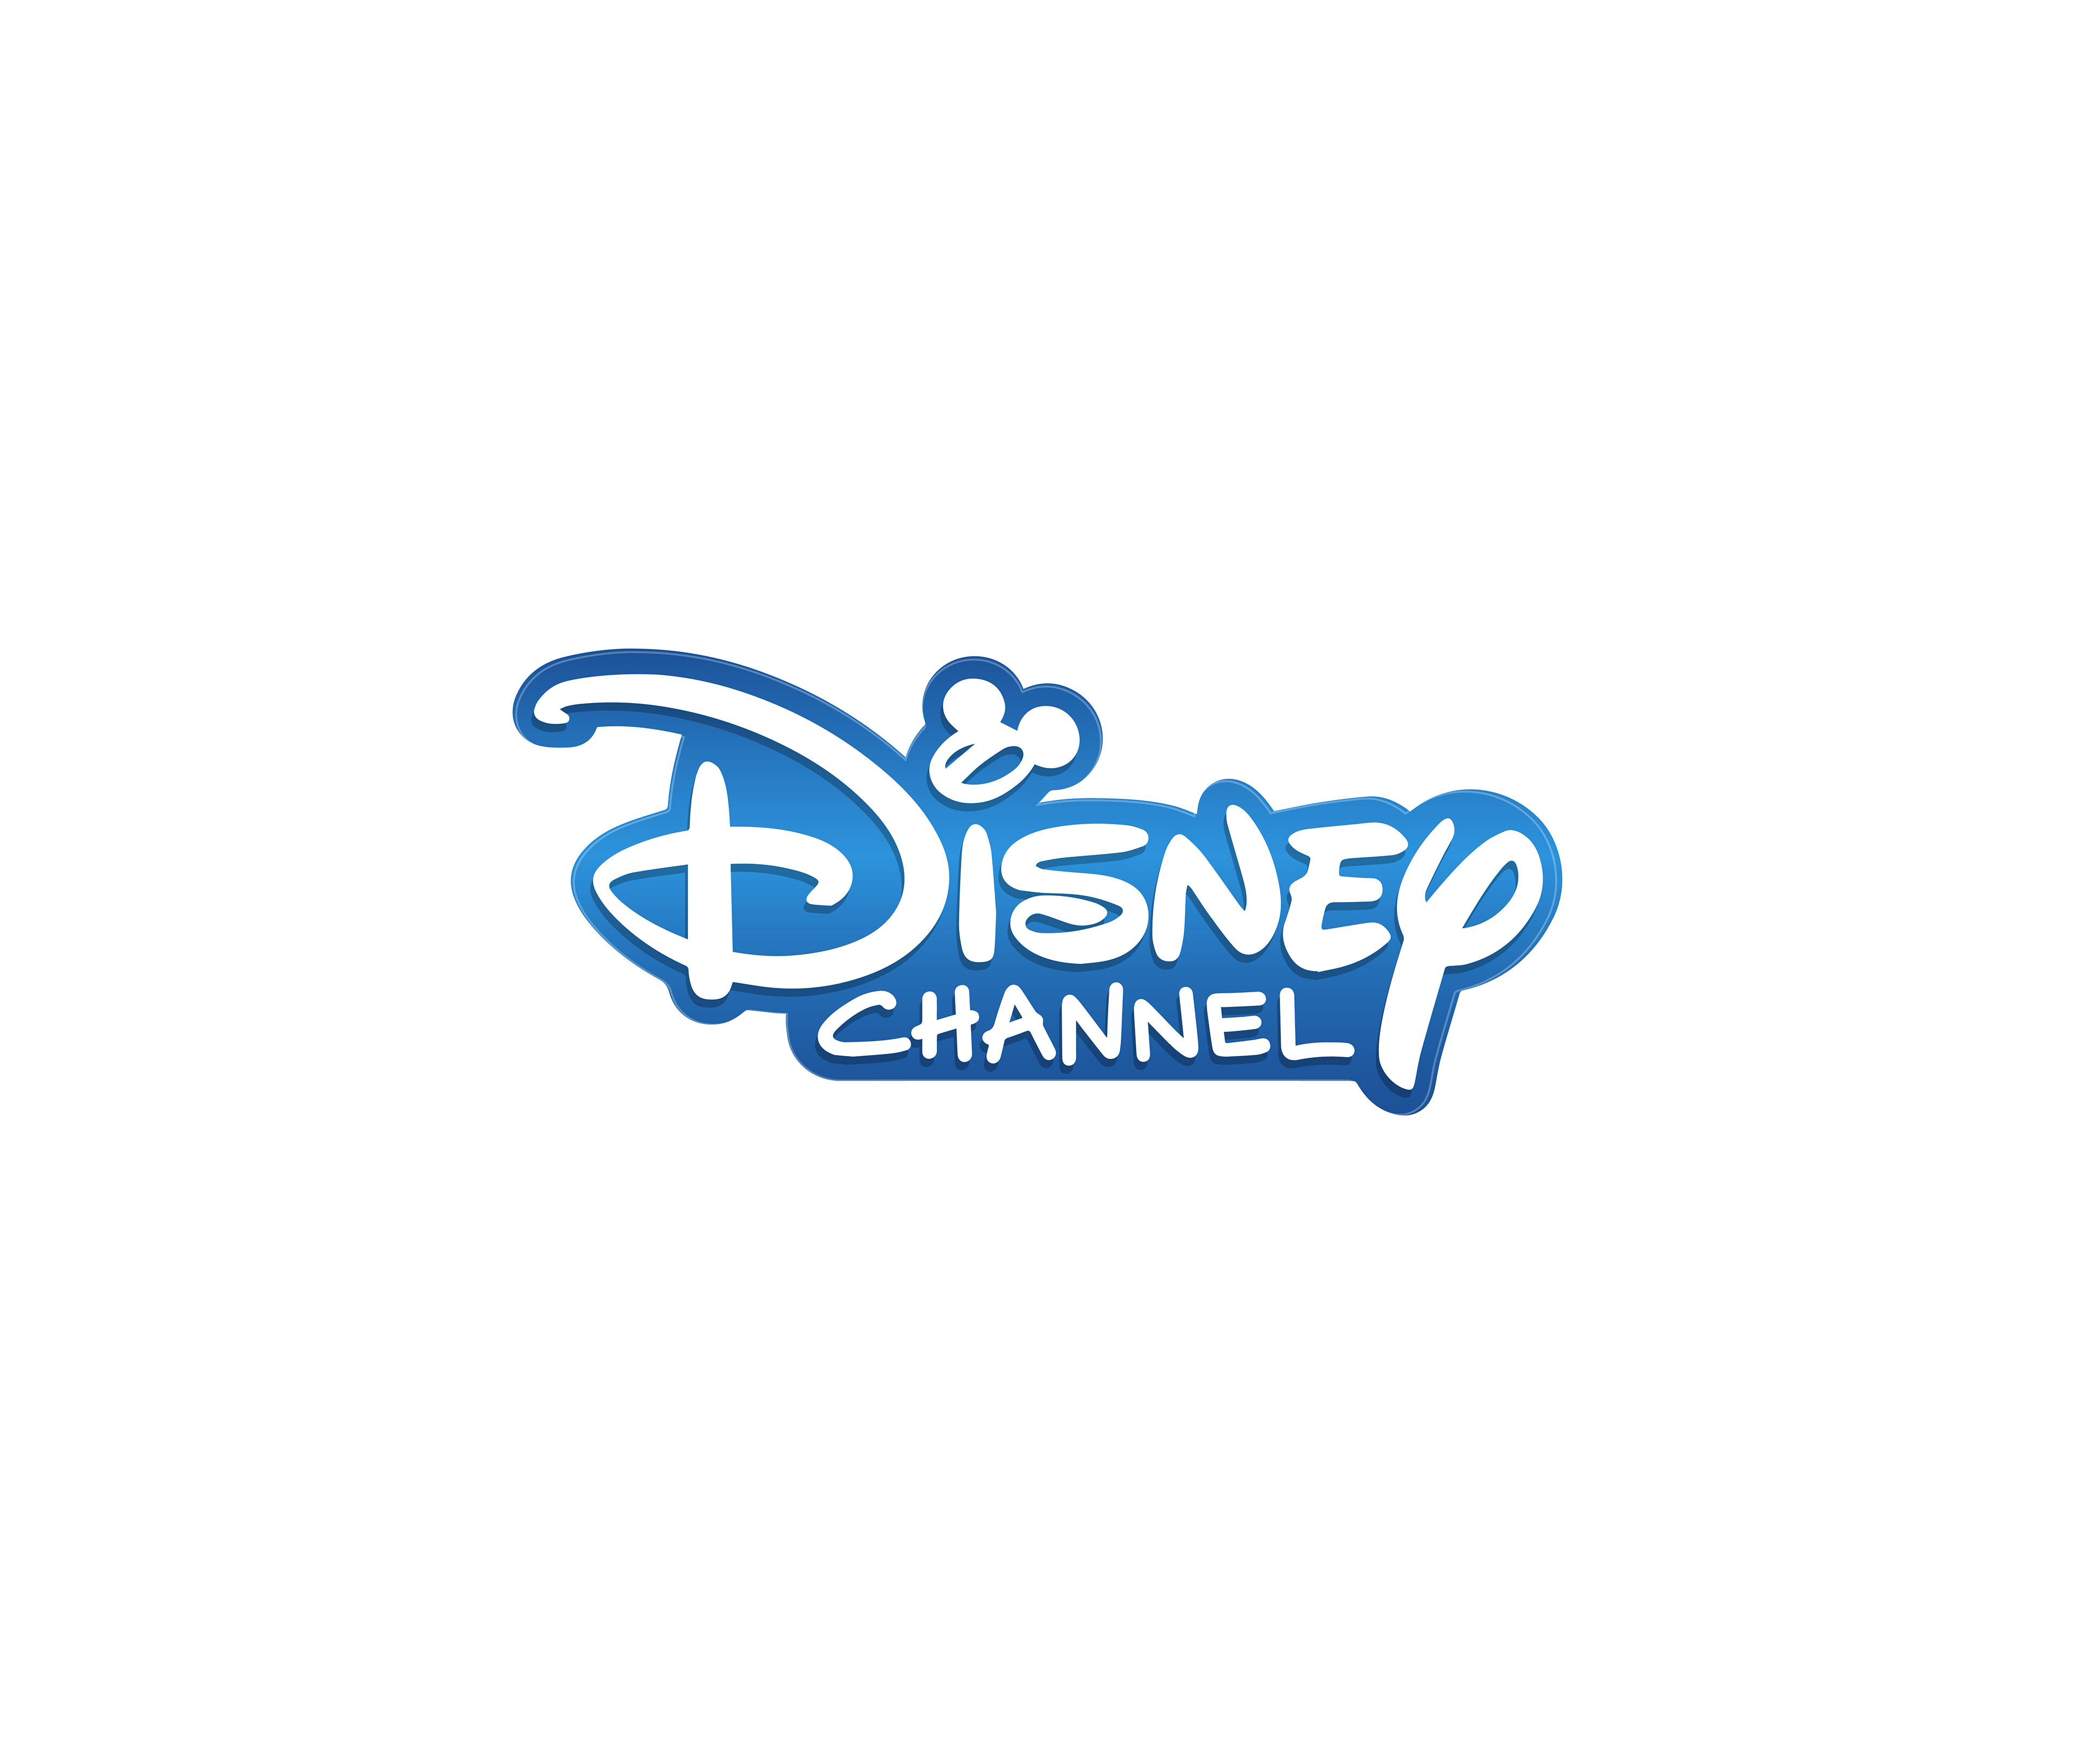 Передача каналов дисней. Канал Disney. Дисней логотип. Телеканал Дисней. Дисней Телеканал логотип.